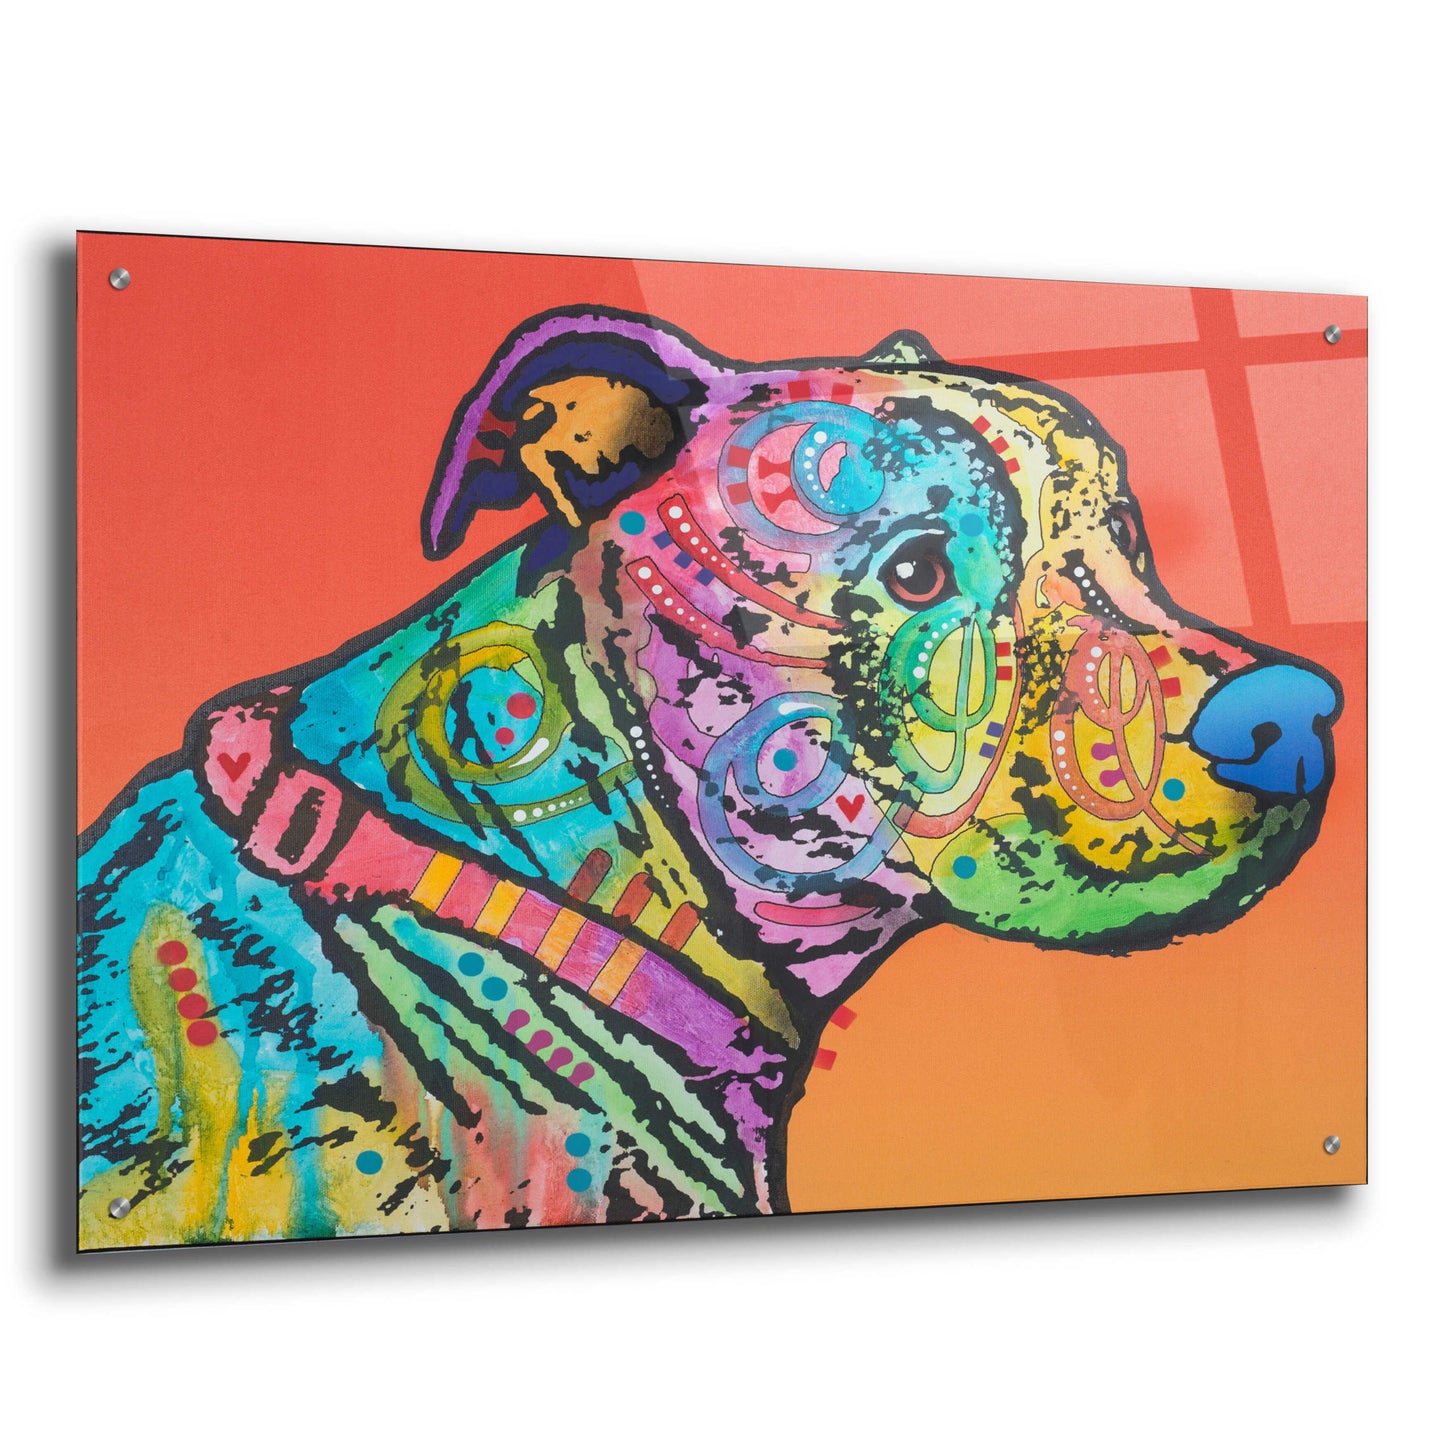 Epic Art 'Hooch' by Dean Russo, Acrylic Glass Wall Art,36x24